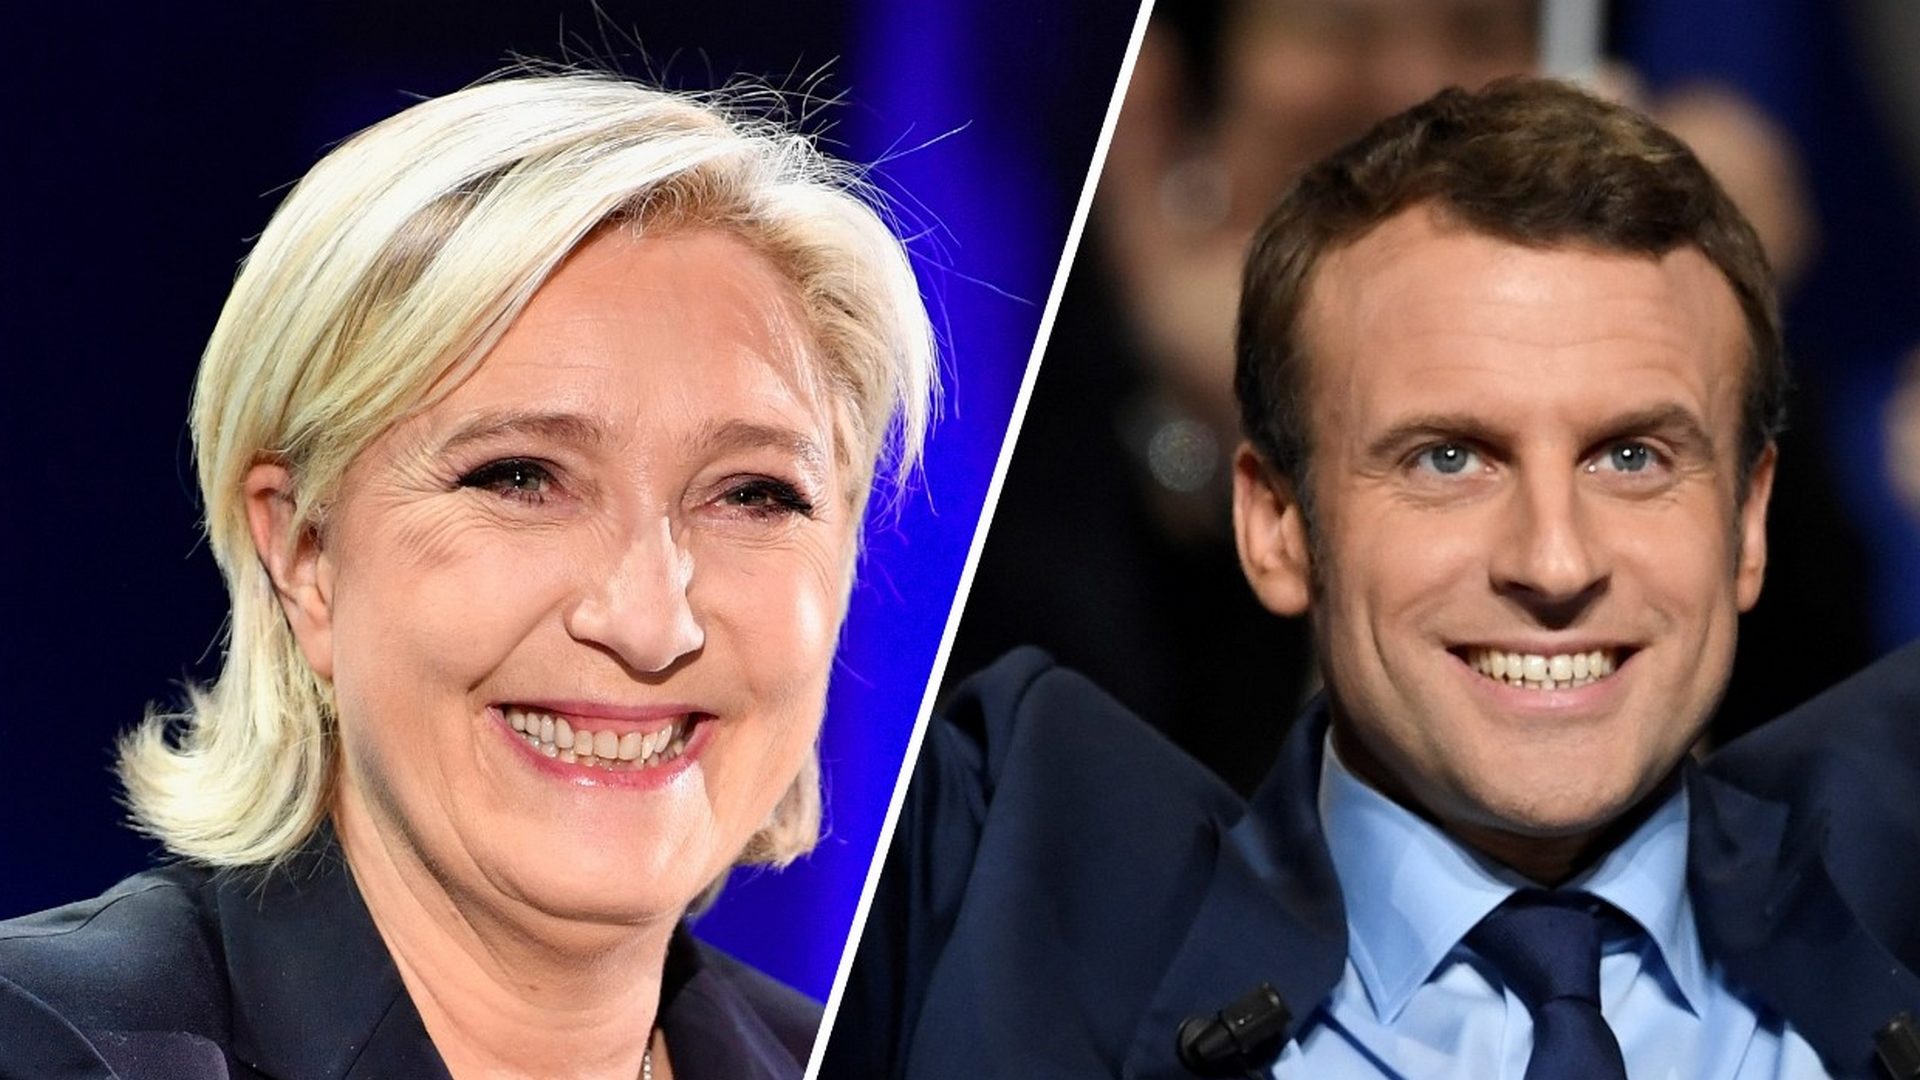 Marine Le Pen et Emmanuel Macron seront au second tour de l'élection présidentielle française (capture d'écran BFMTV)